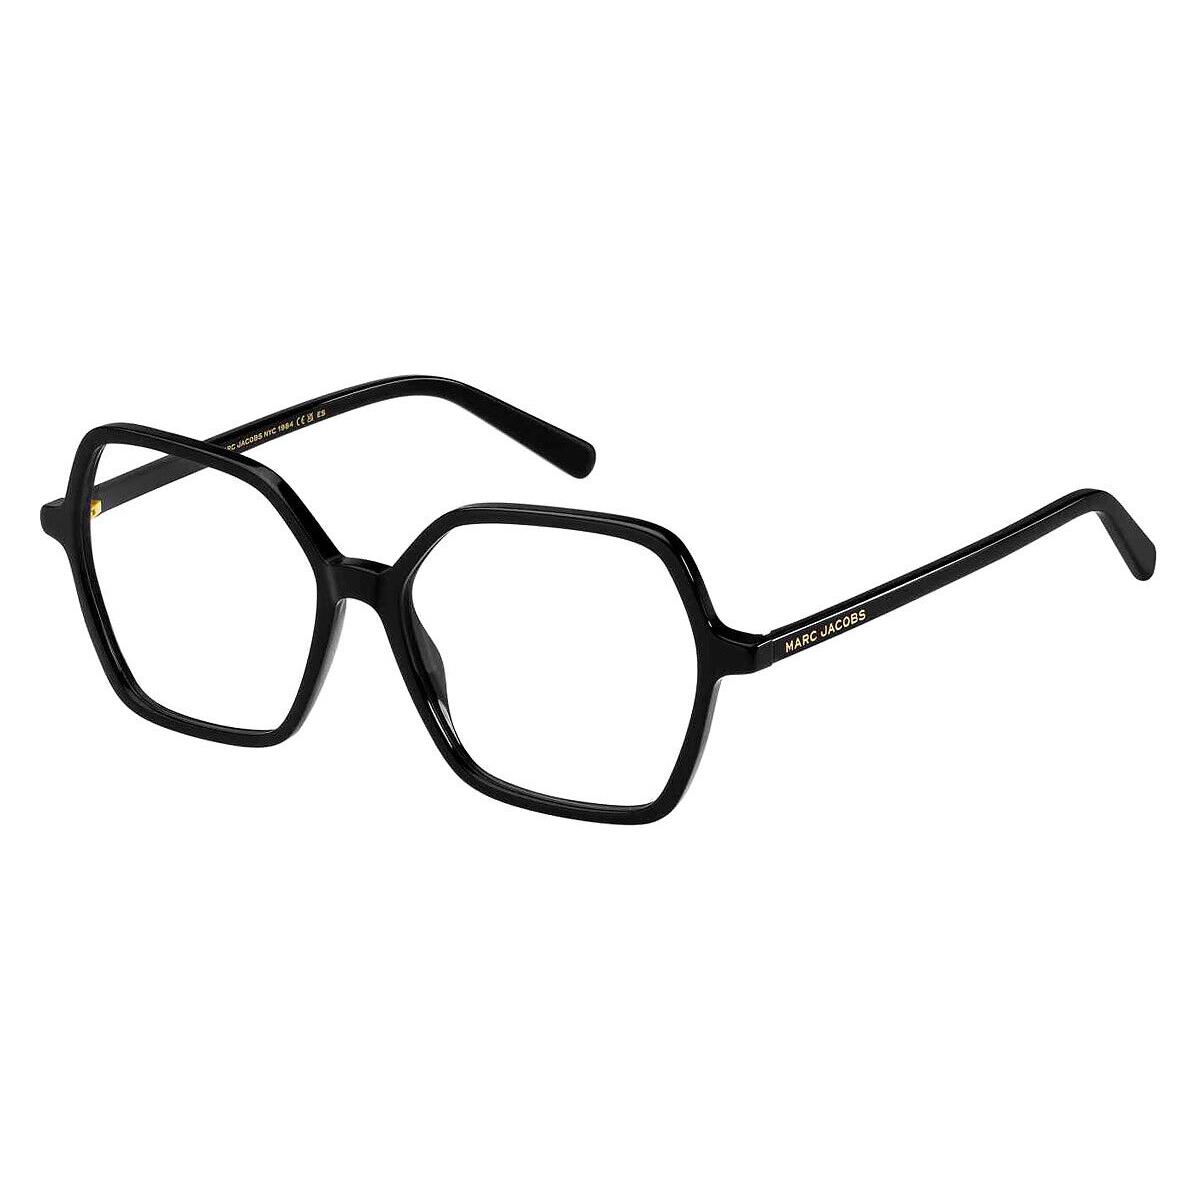 Marc Jacobs Mjb Eyeglasses Women Black 54mm - Frame: Black, Lens: Demo